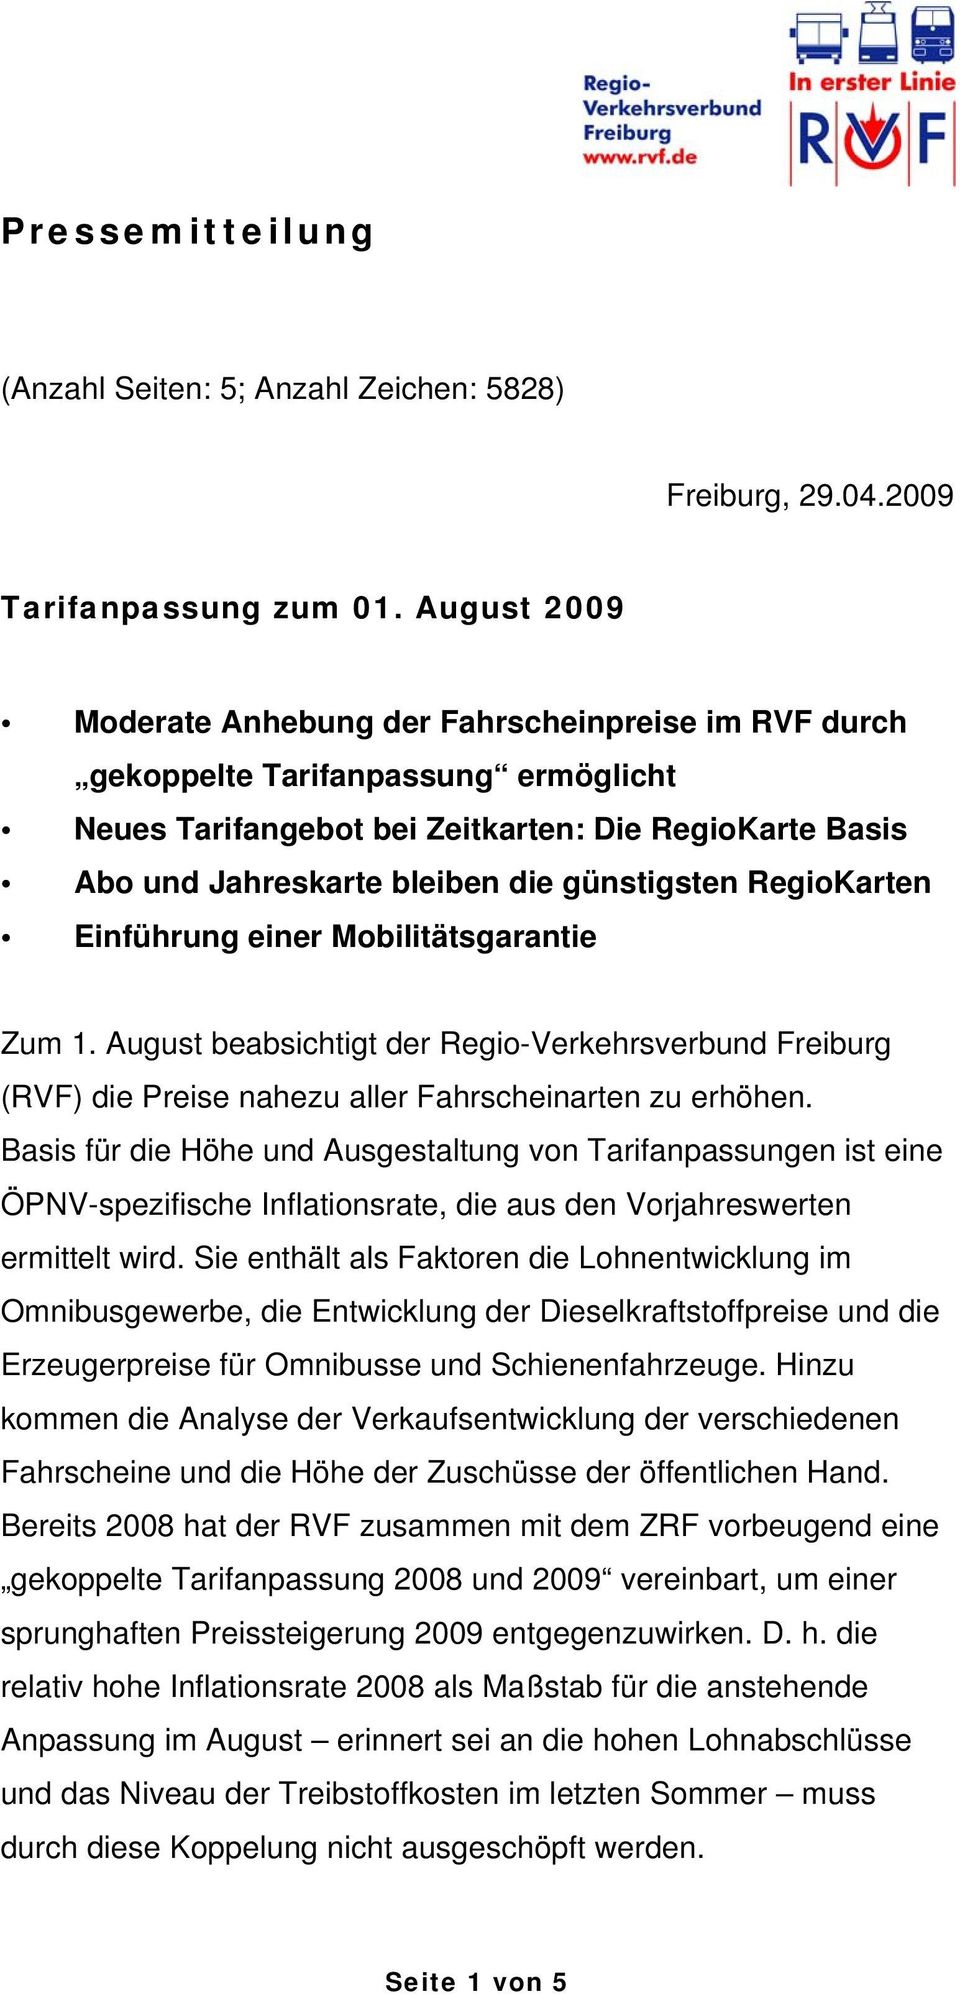 günstigsten RegioKarten Einführung einer Mobilitätsgarantie Zum 1. August beabsichtigt der Regio-Verkehrsverbund Freiburg (RVF) die Preise nahezu aller Fahrscheinarten zu erhöhen.